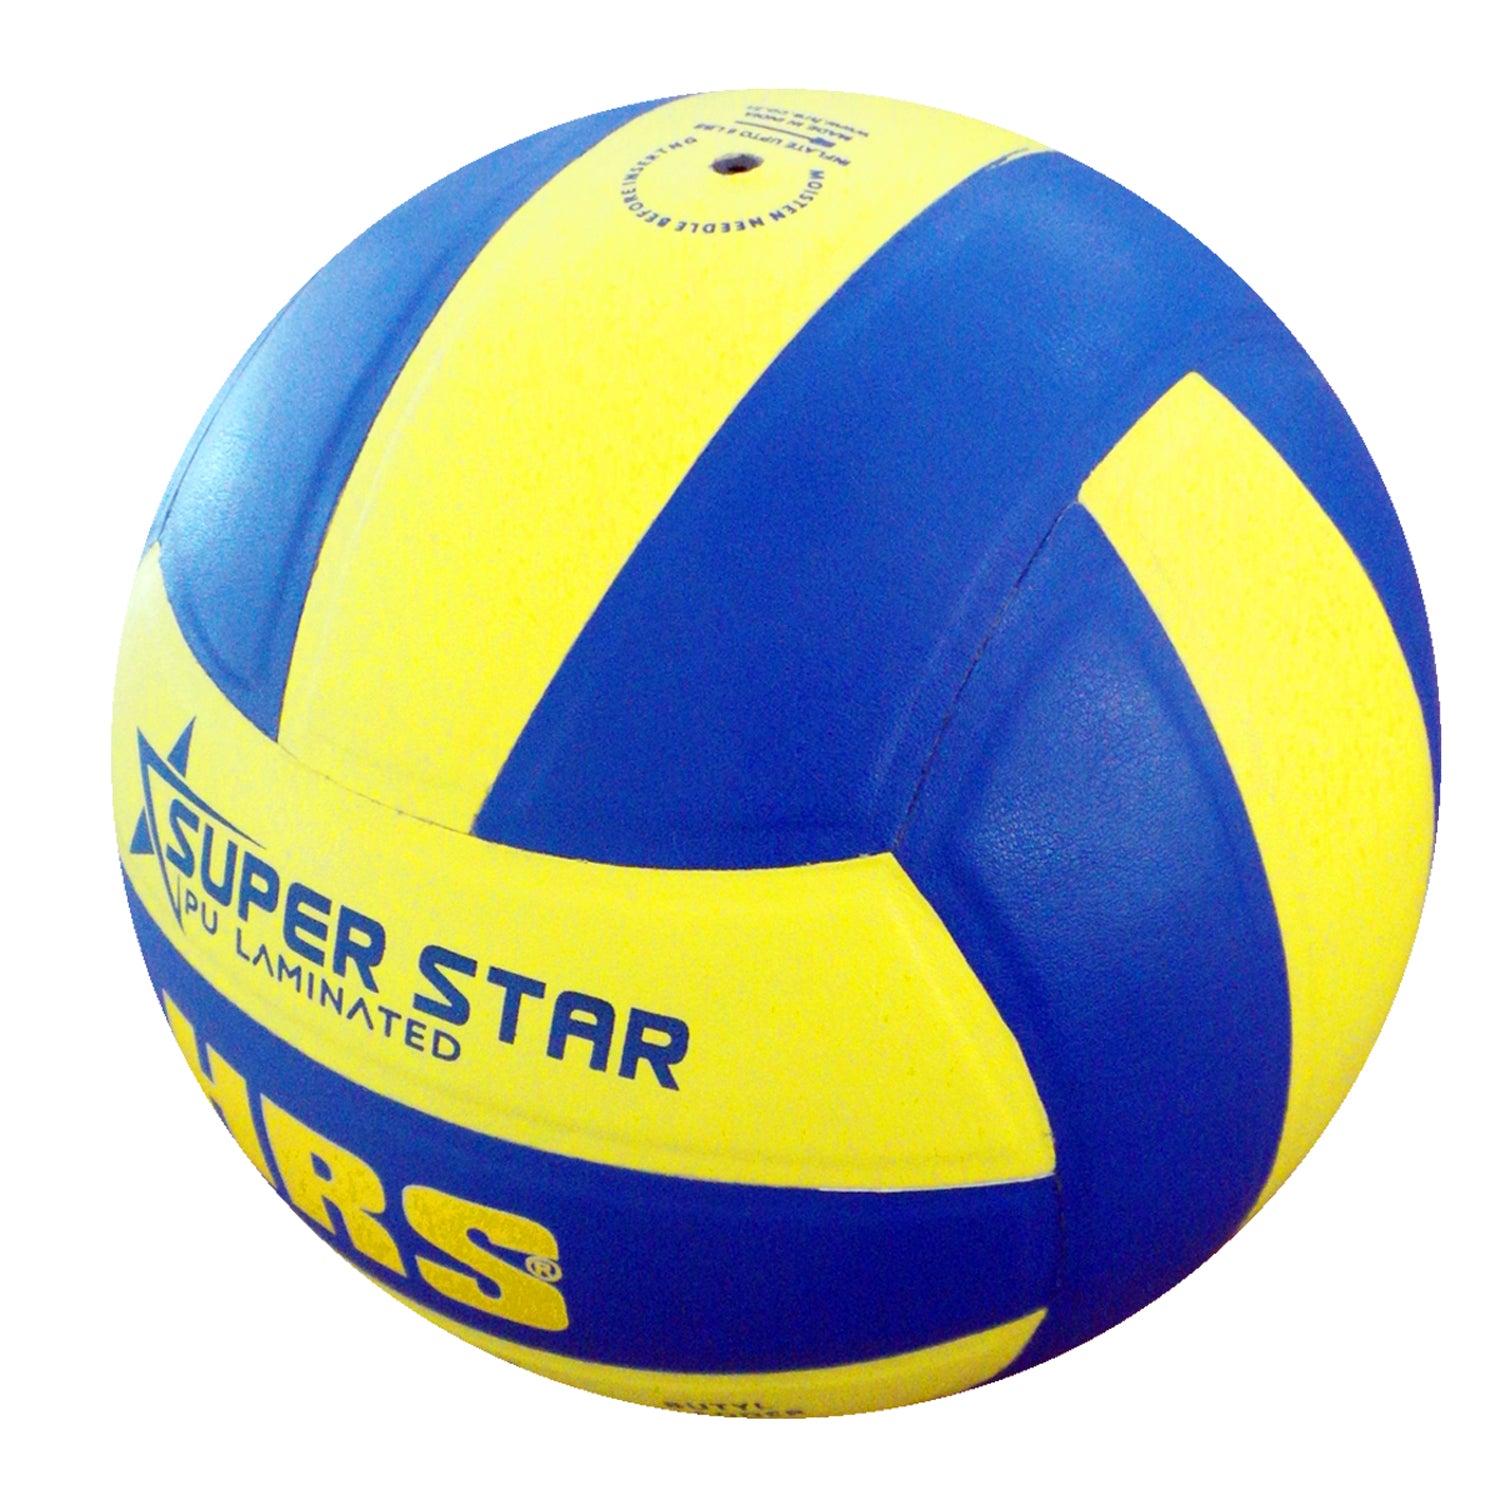 HRS Super Star Vollyball, Blue/Yellow - Best Price online Prokicksports.com